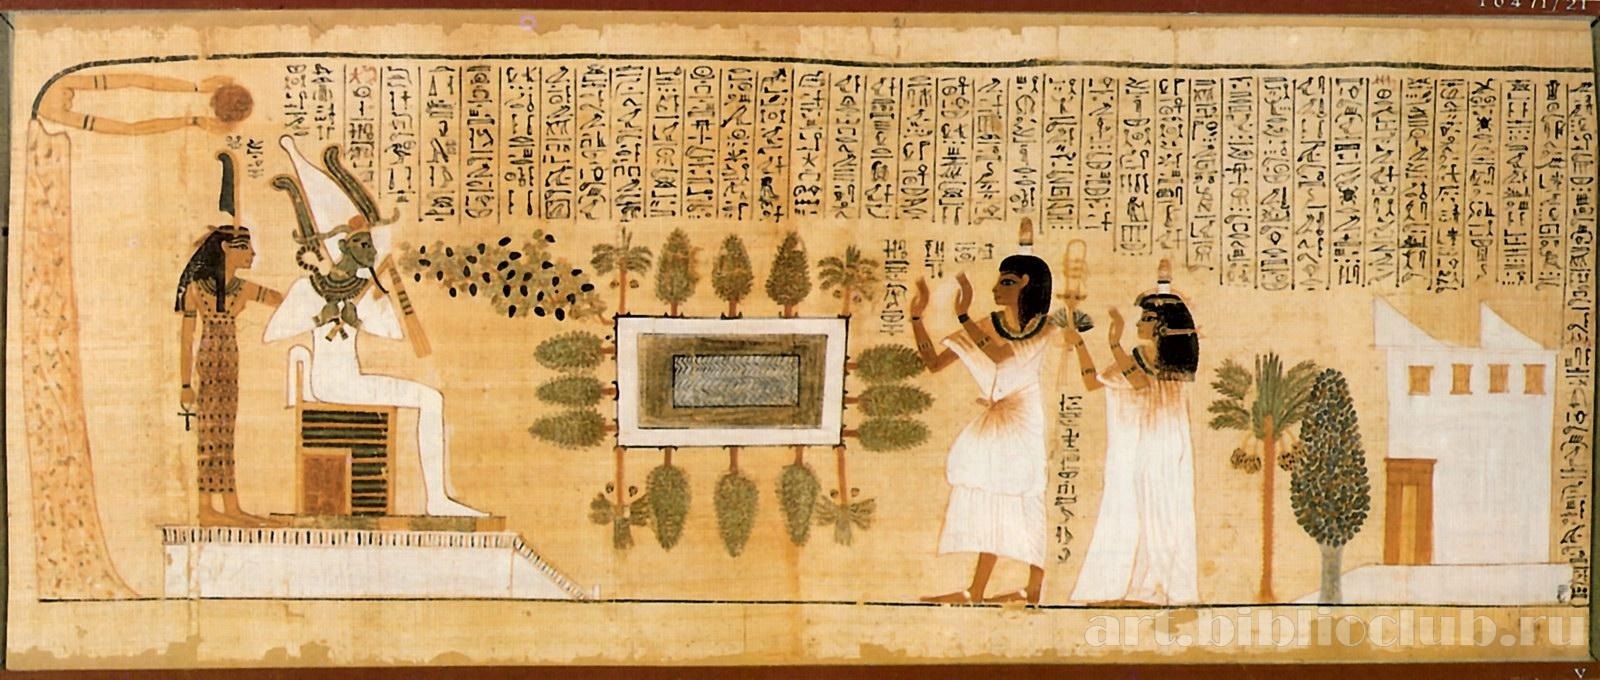 Древнеегипетская живопись Папирус британский музей